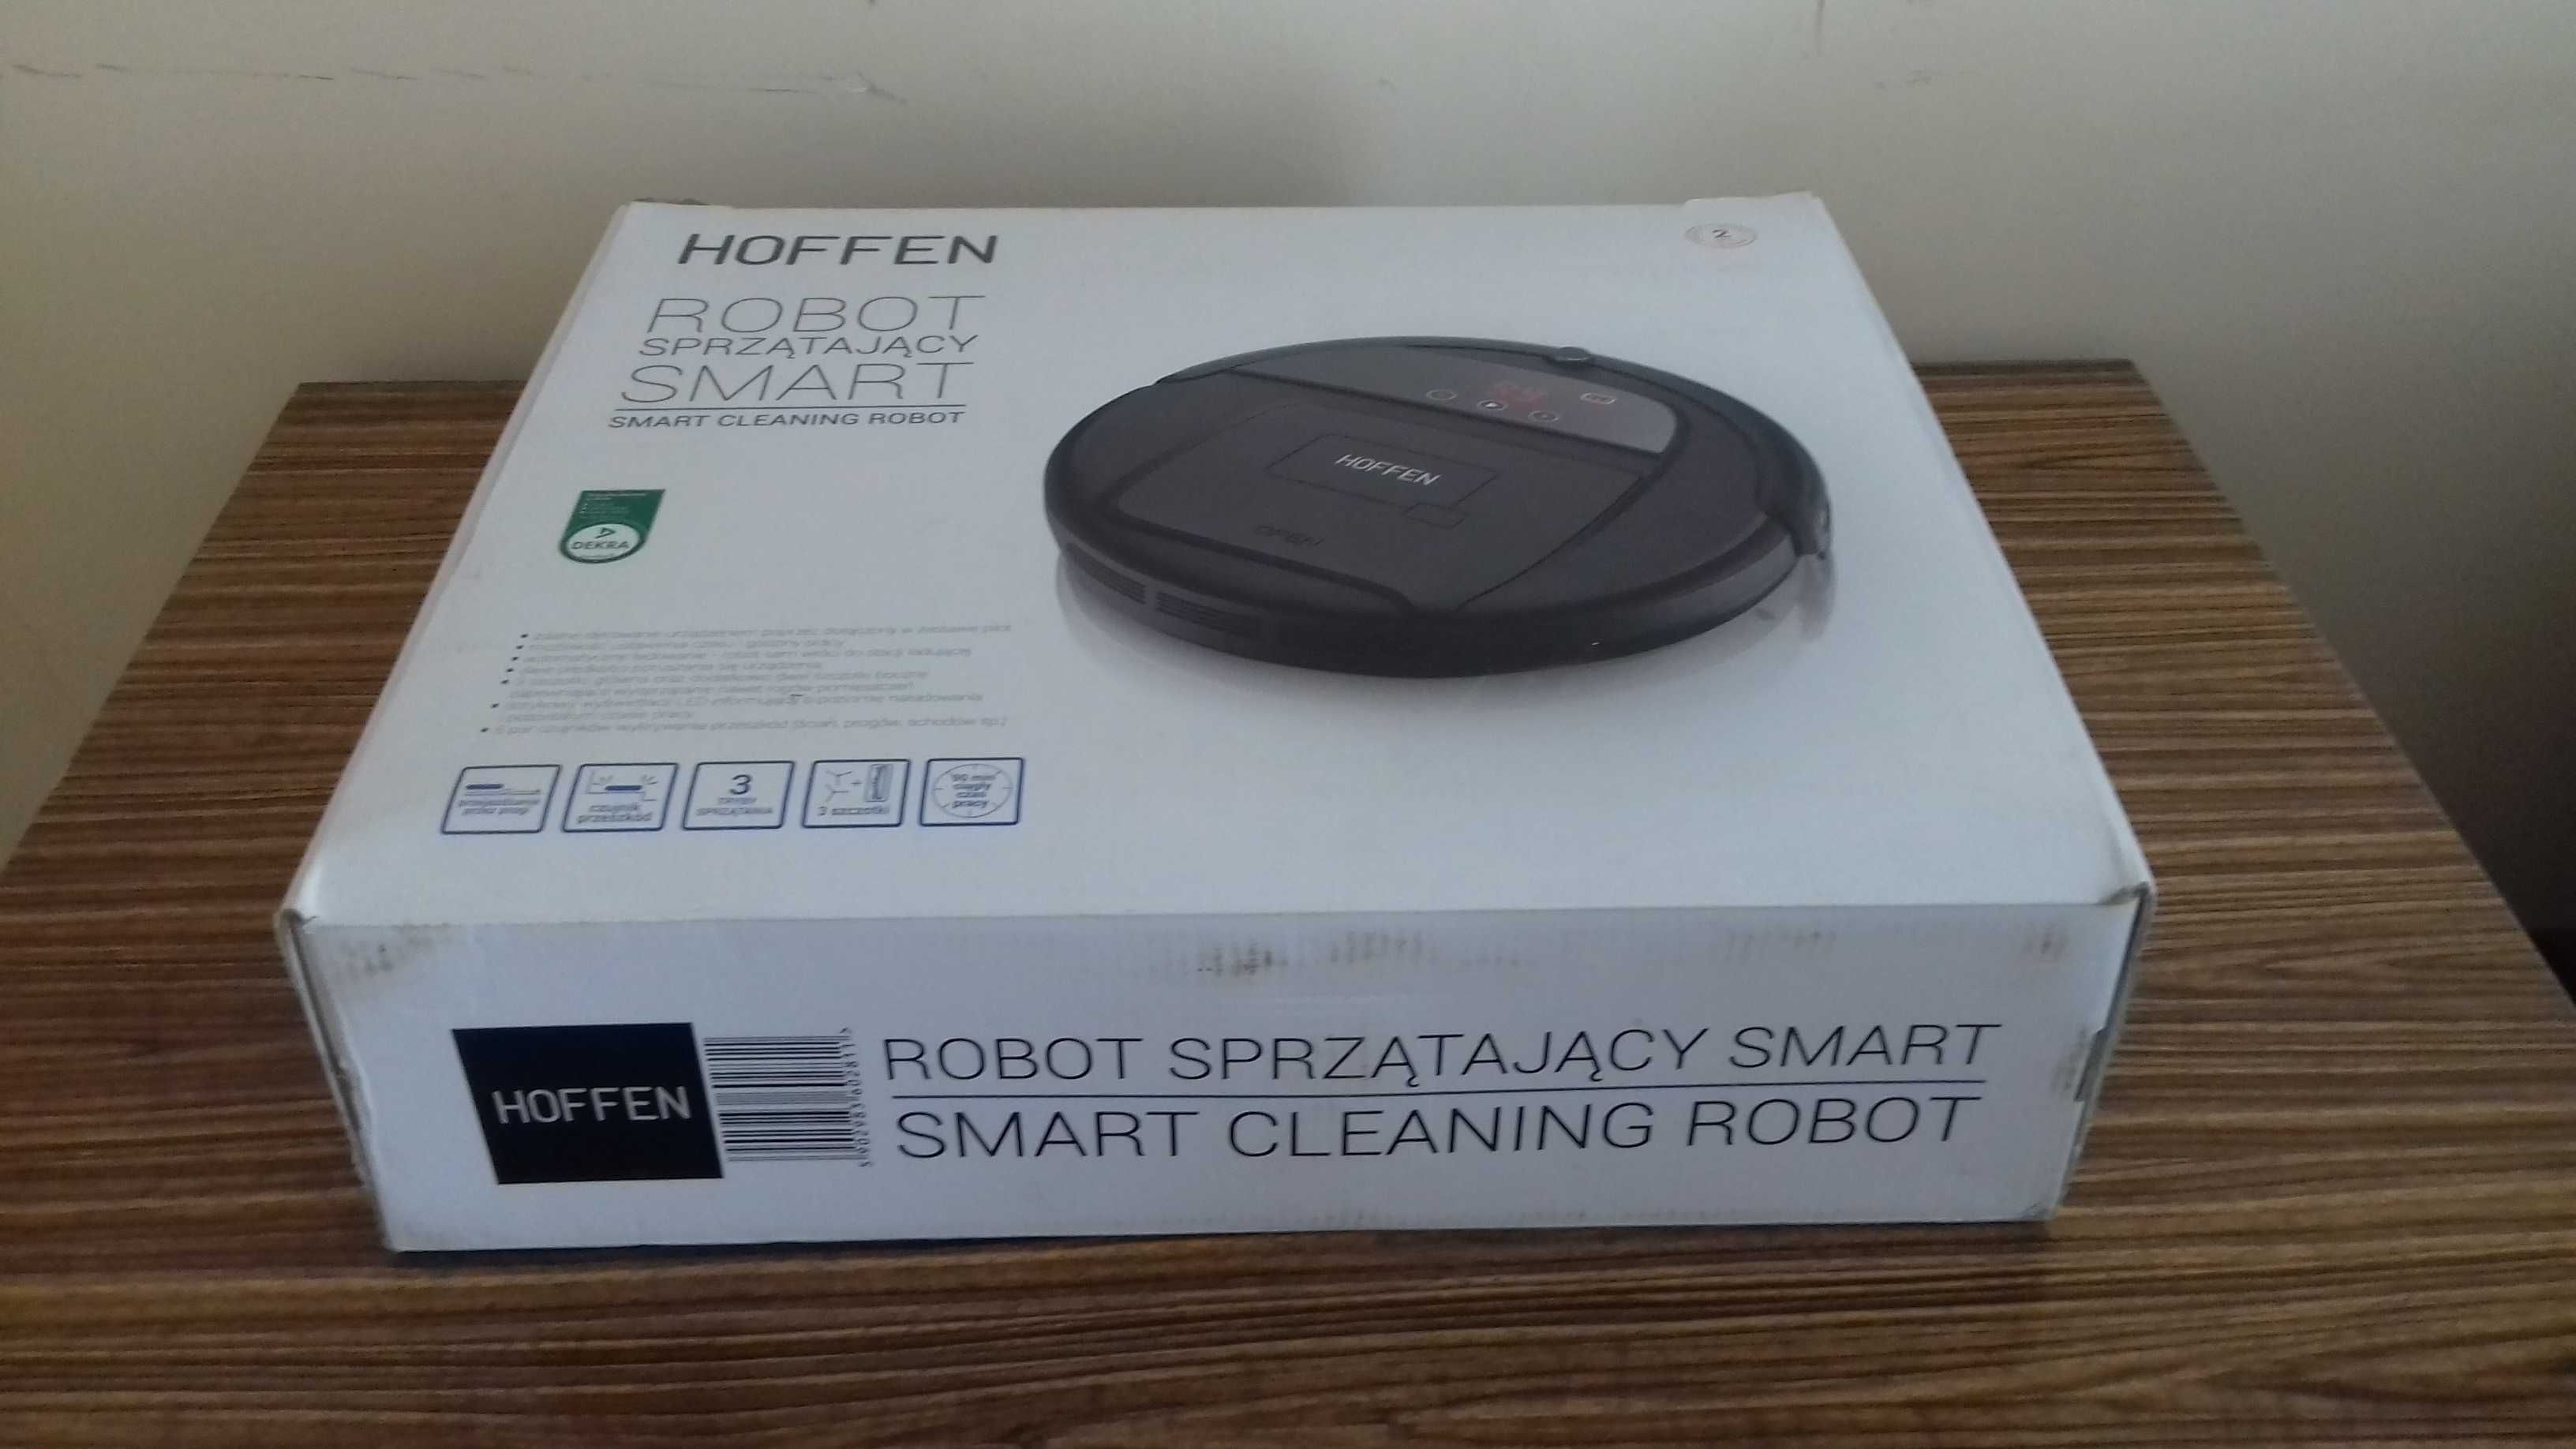 Robot sprzątający „Hoffen”, do sprzedania